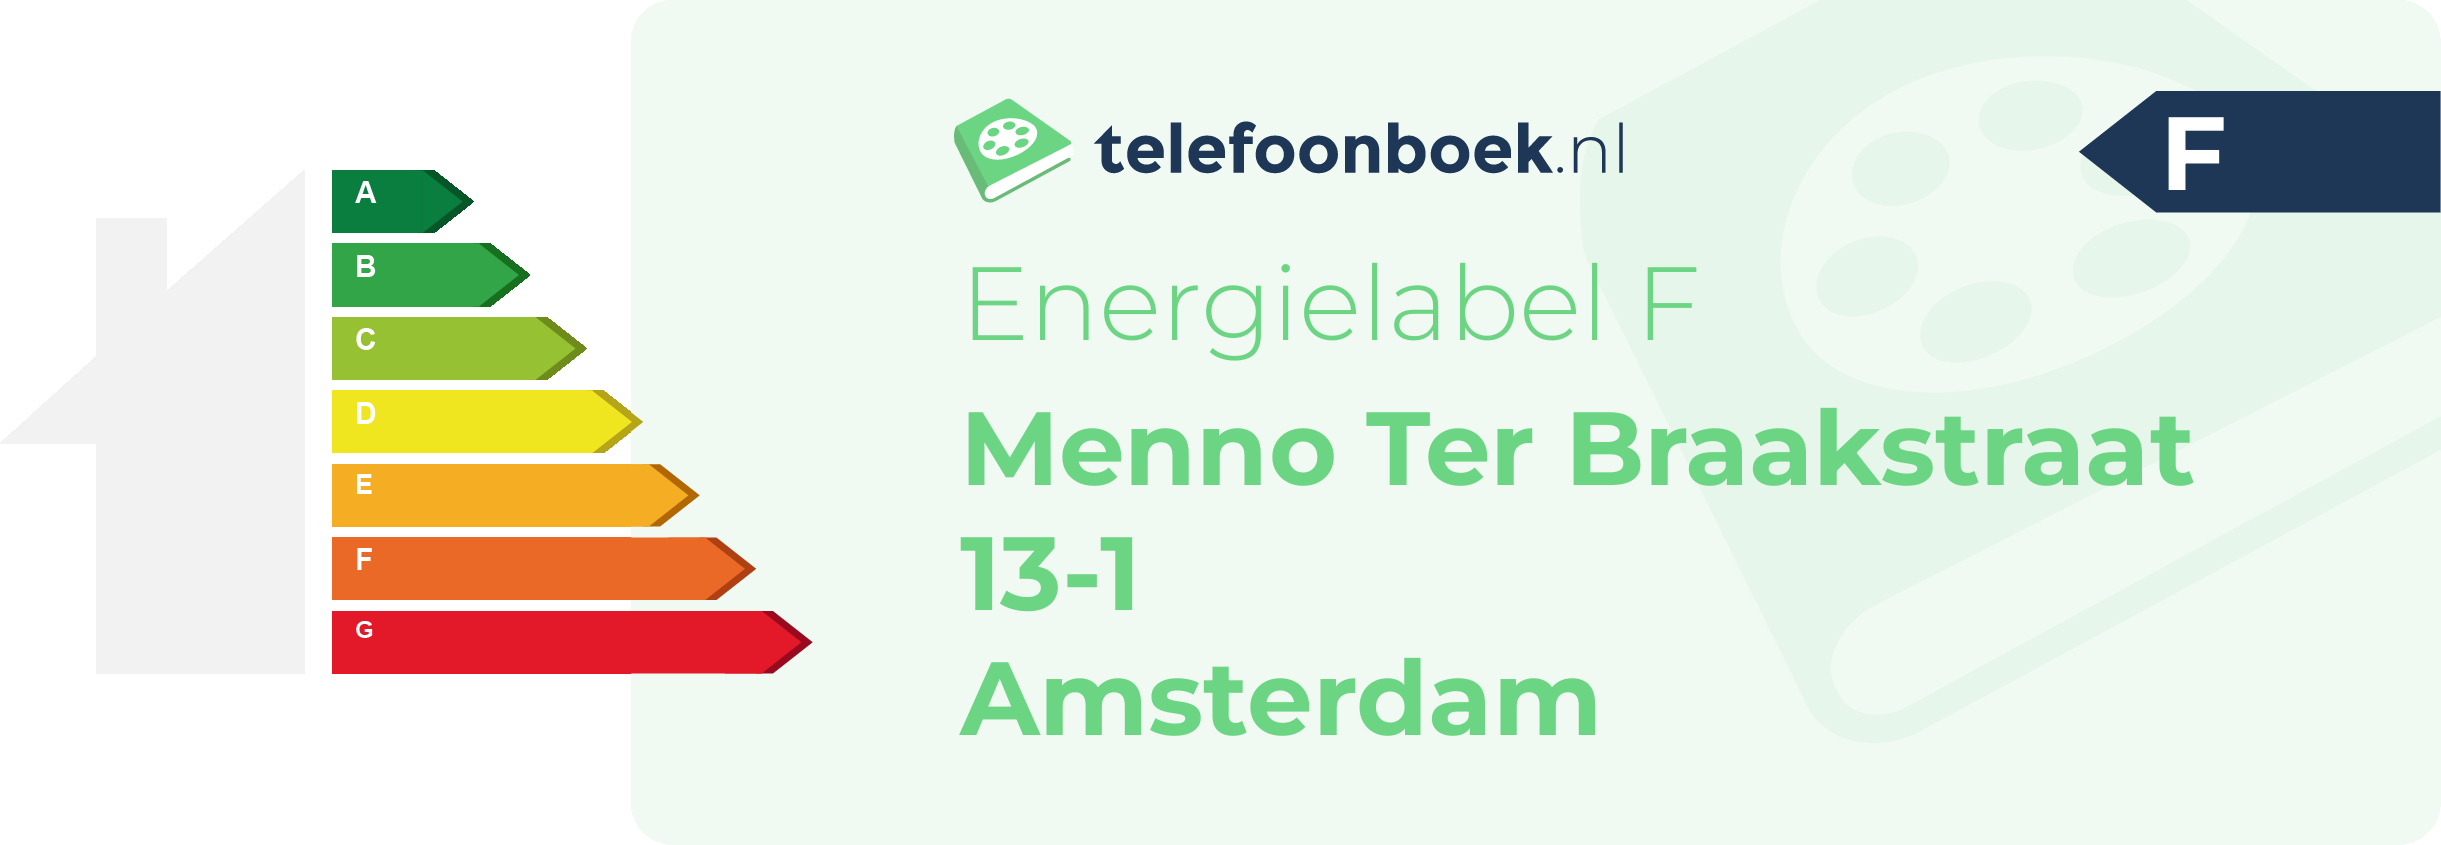 Energielabel Menno Ter Braakstraat 13-1 Amsterdam